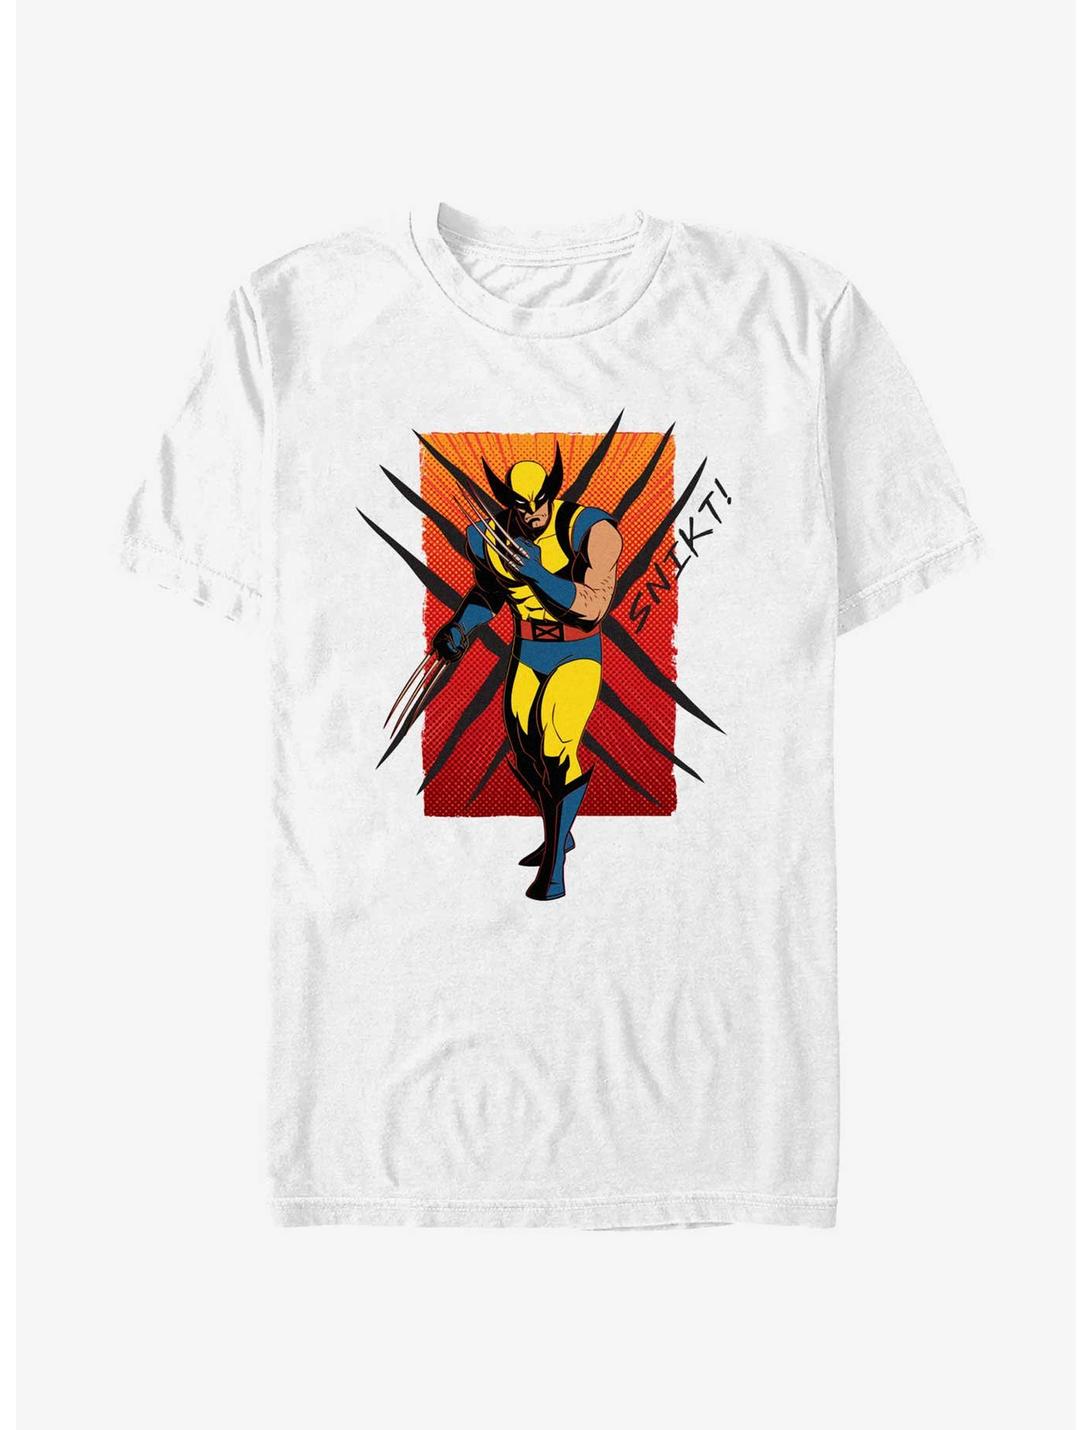 Marvel X-Men '97 Wolverine SNIKT! T-Shirt, WHITE, hi-res